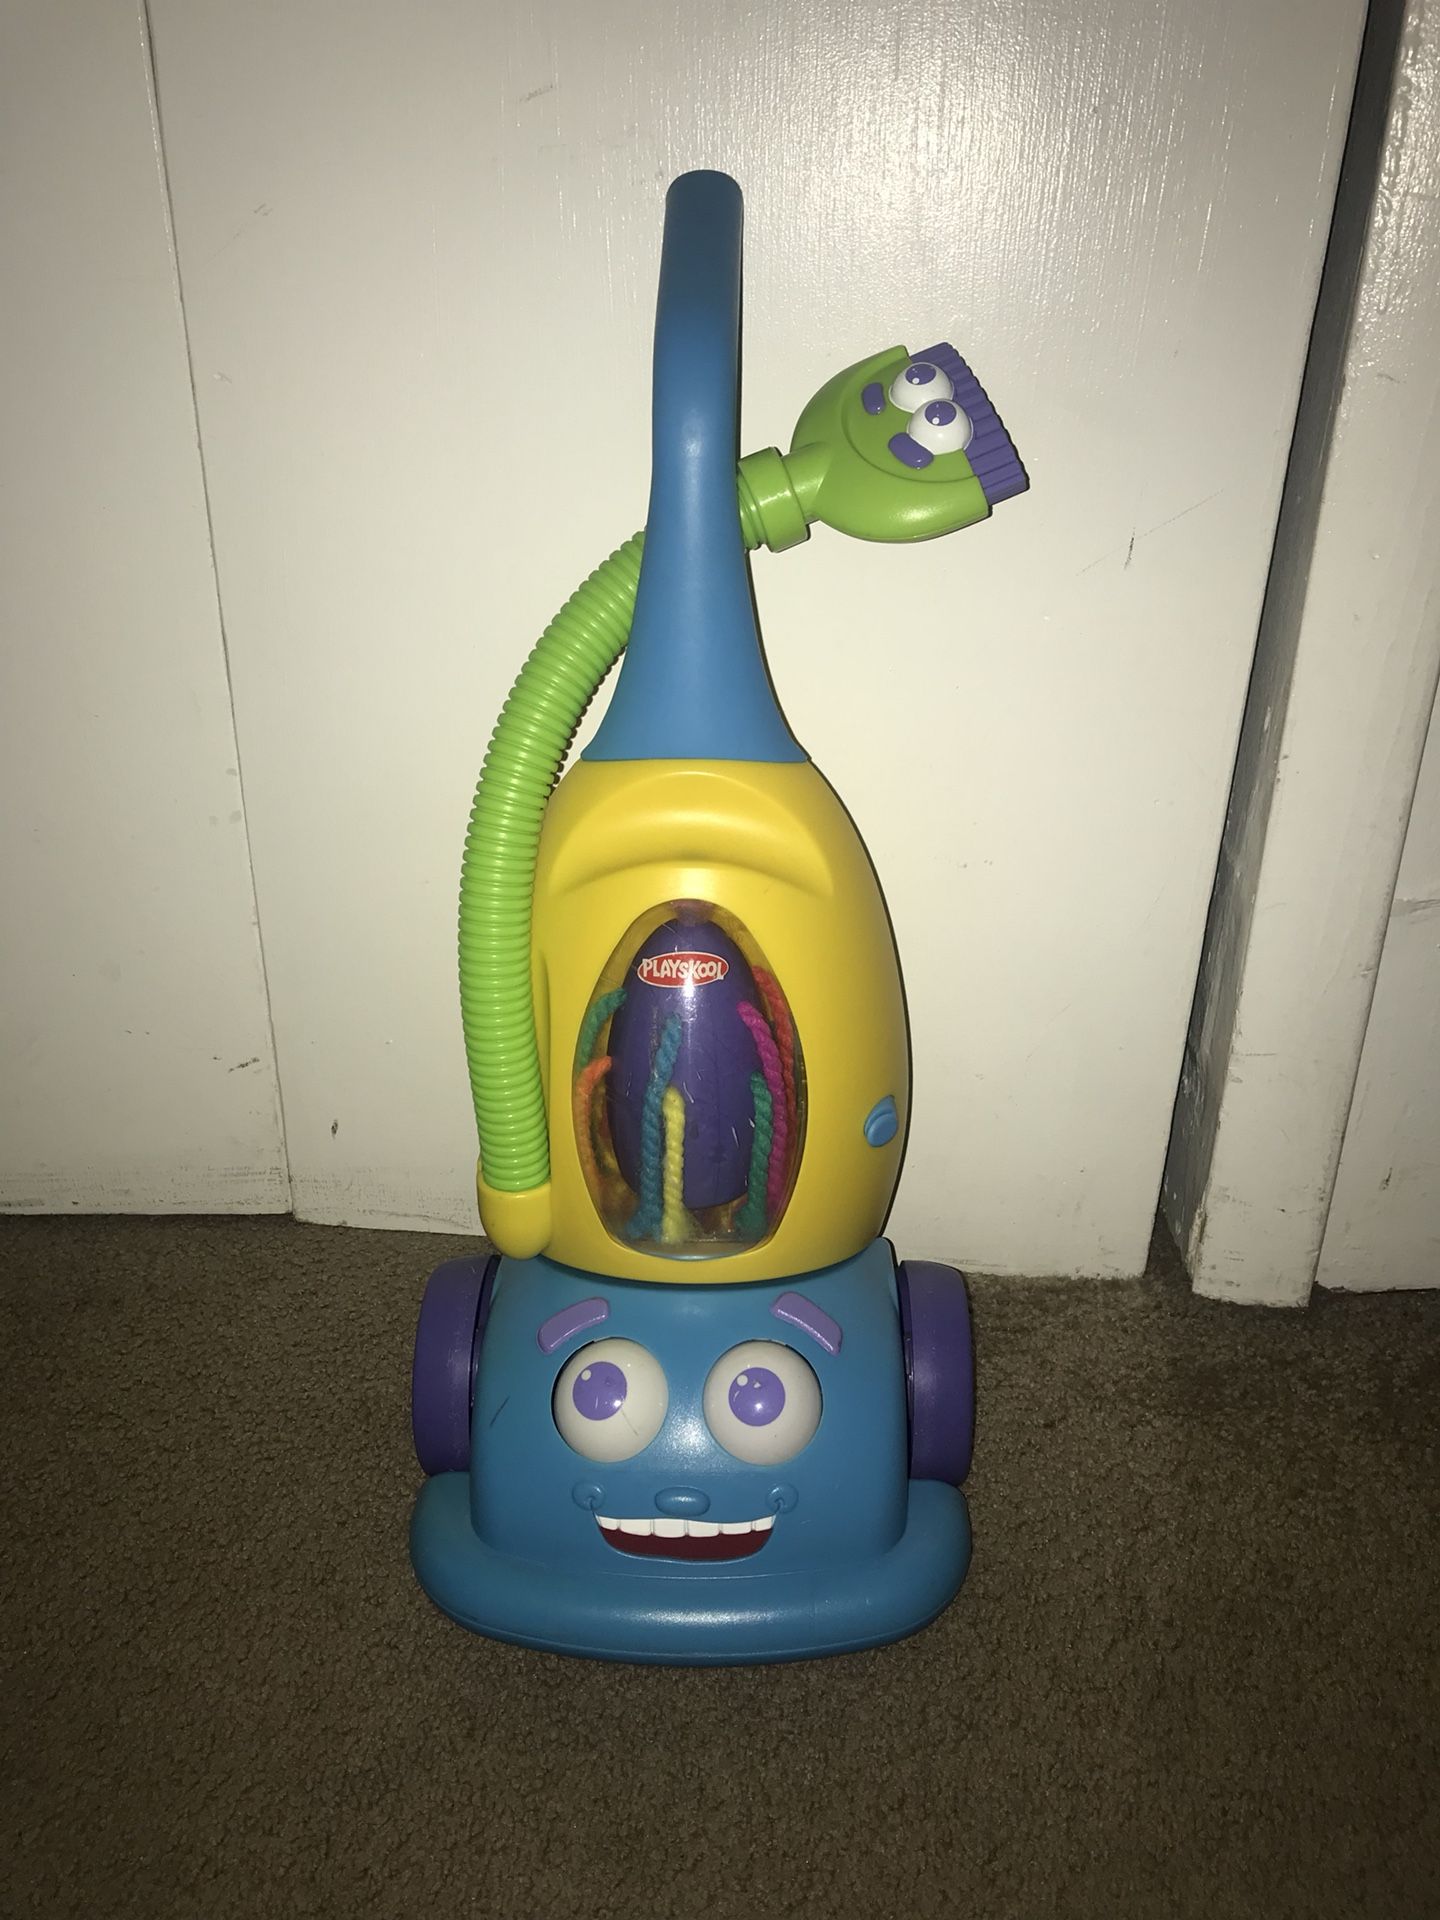 Toy vacuum